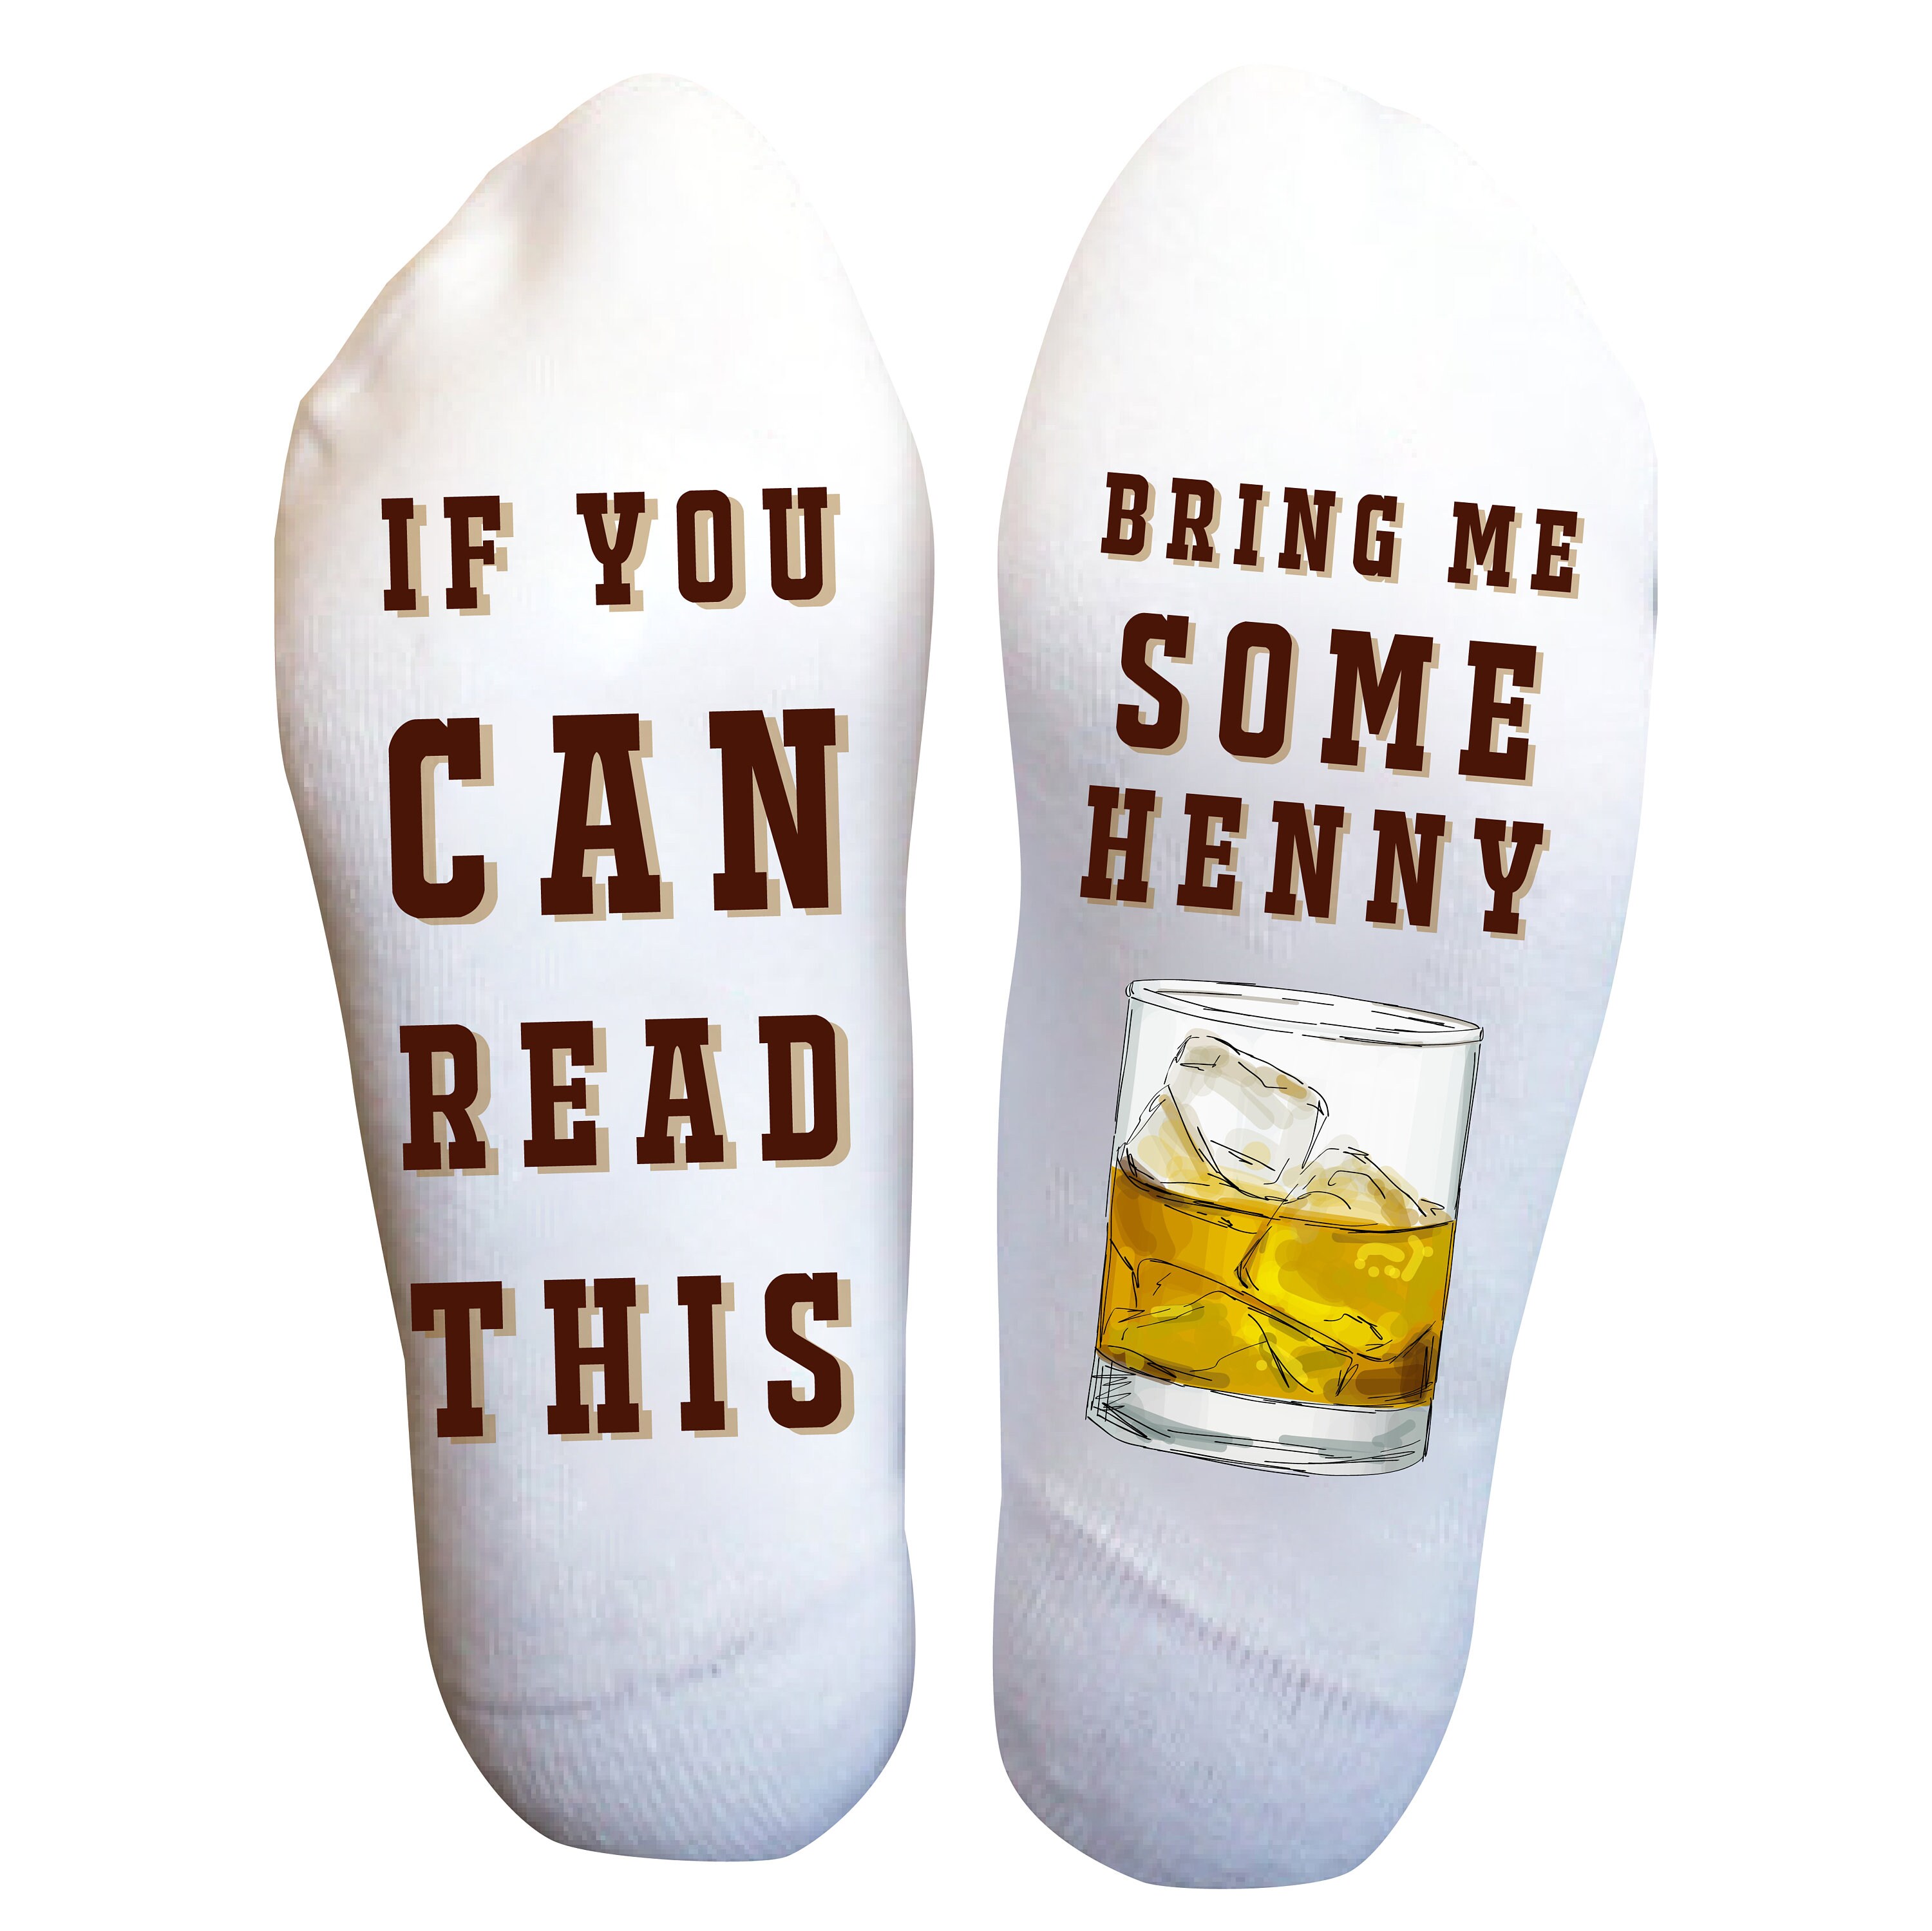 Bring me Hennessy Socks Birthday Gift Christmas Party | Etsy